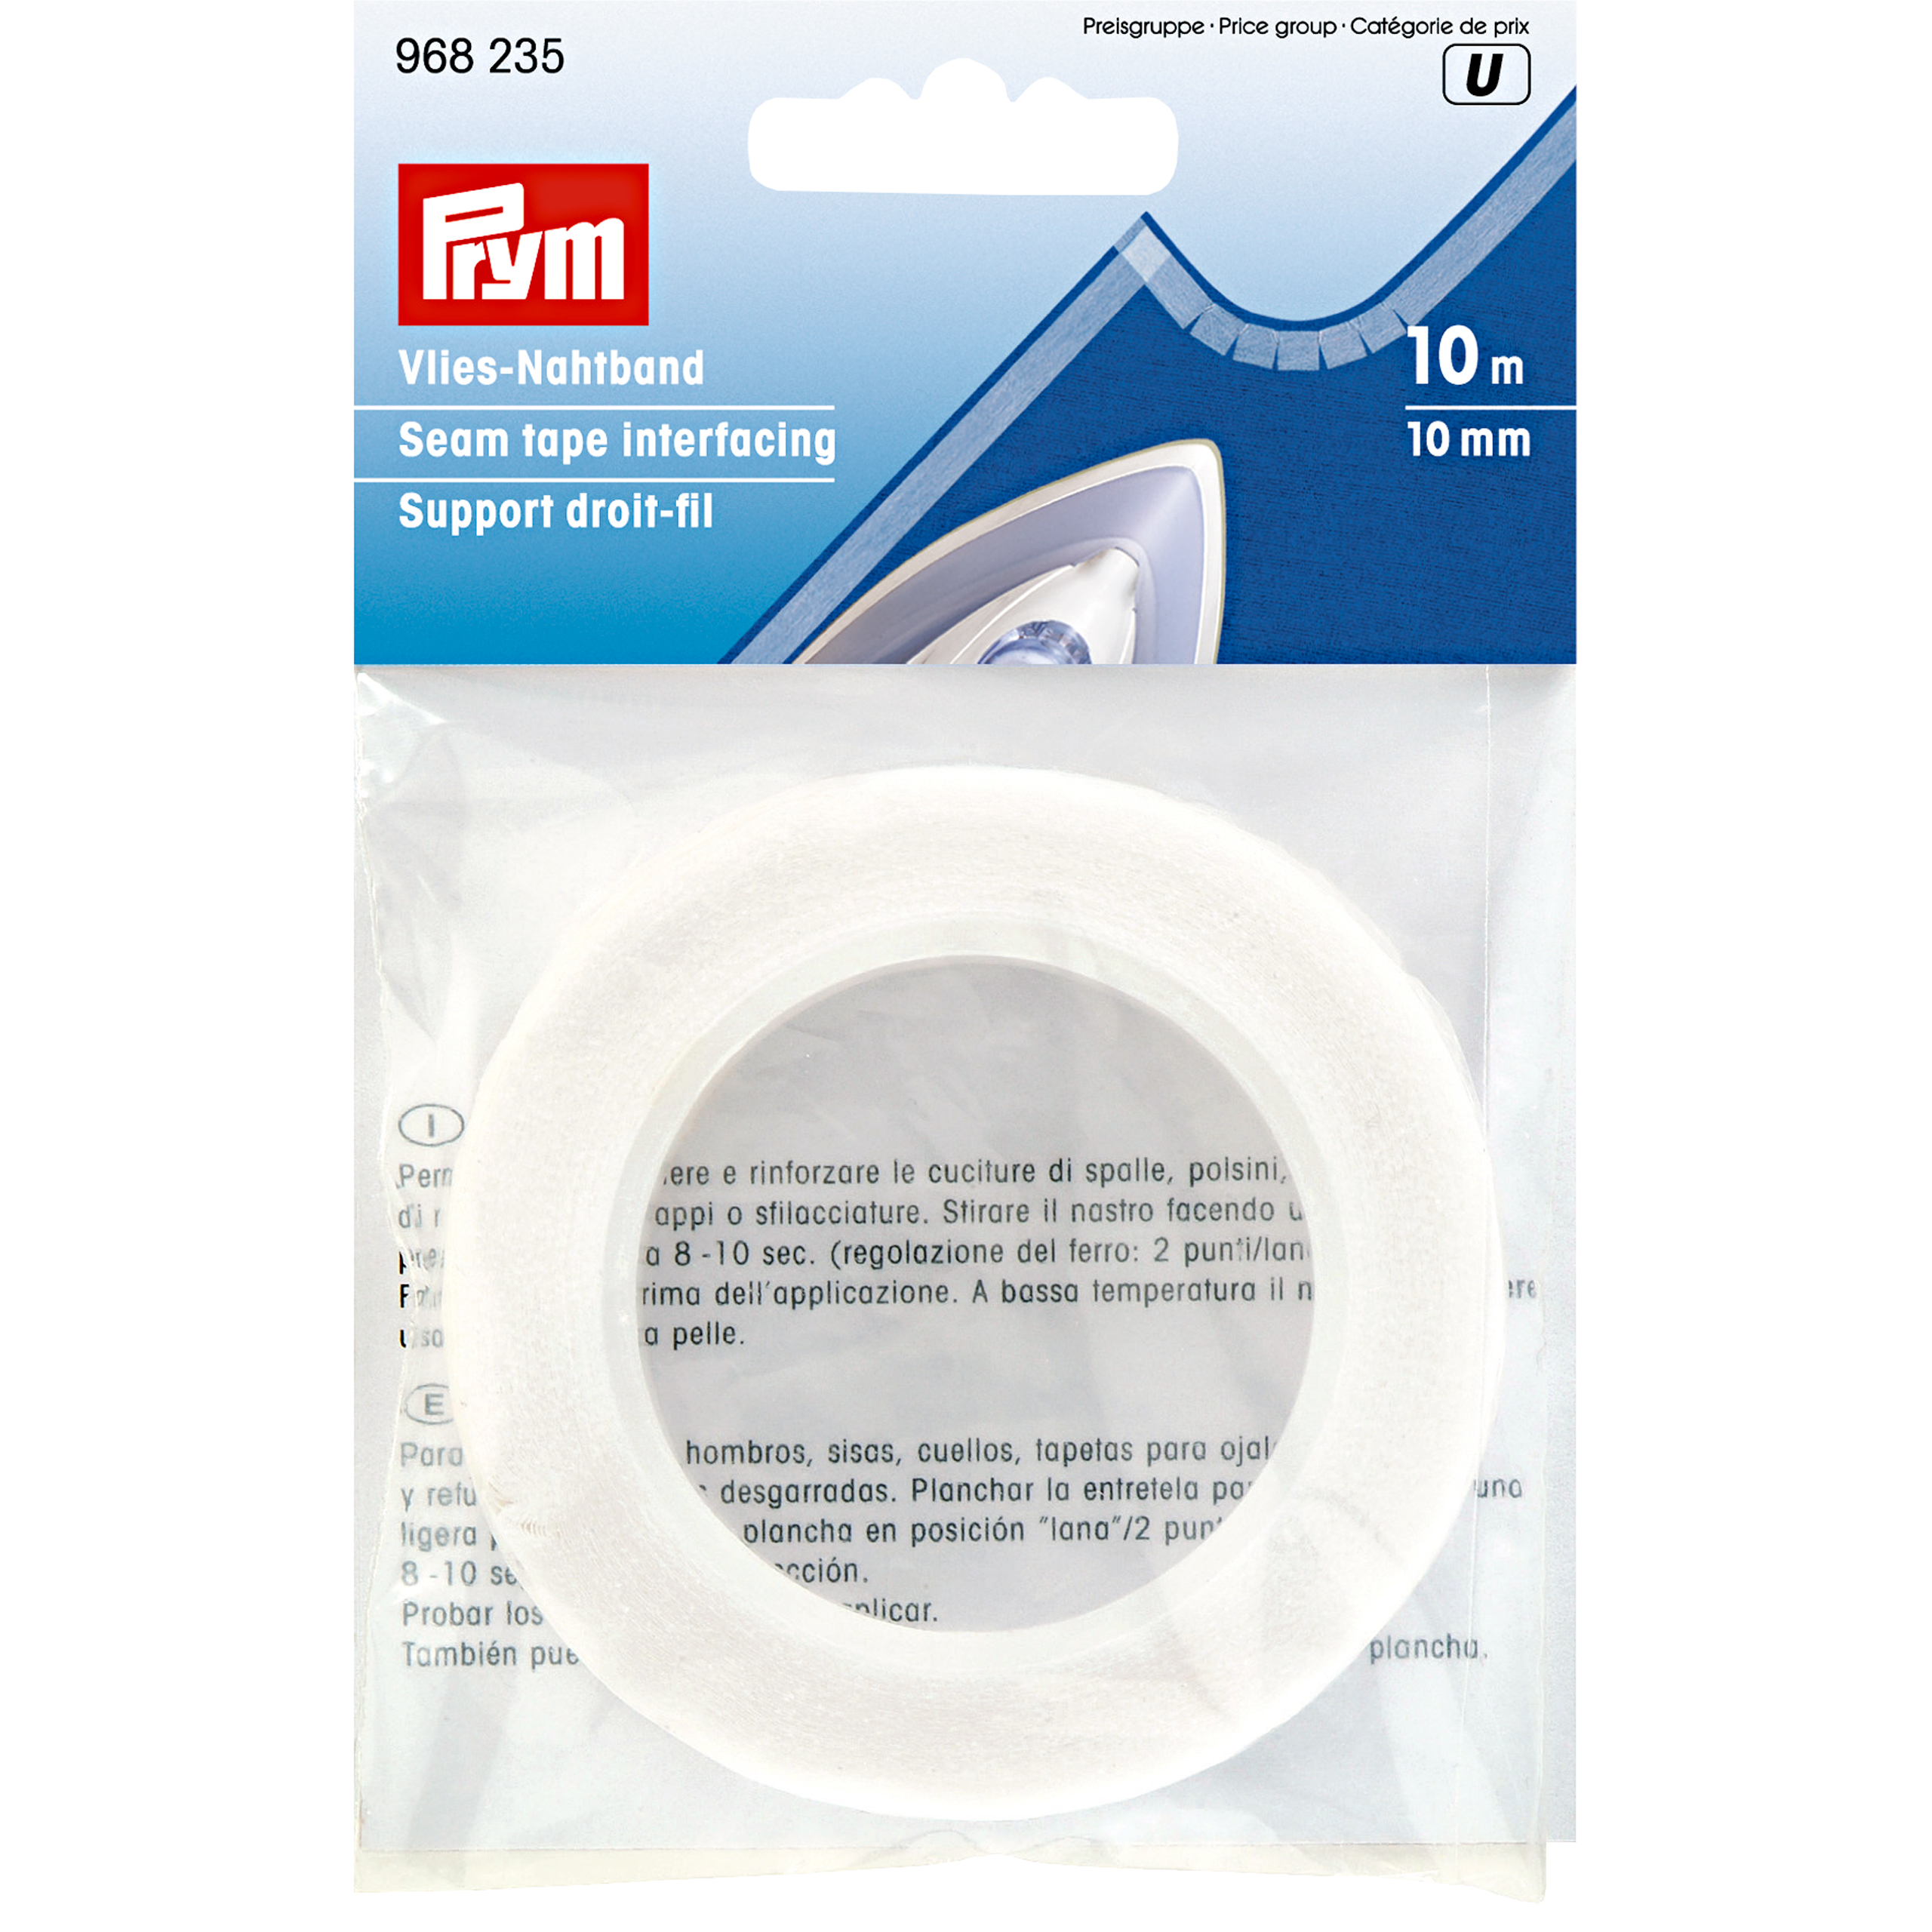 Seam tape interfacing 10 mm white, 10 m